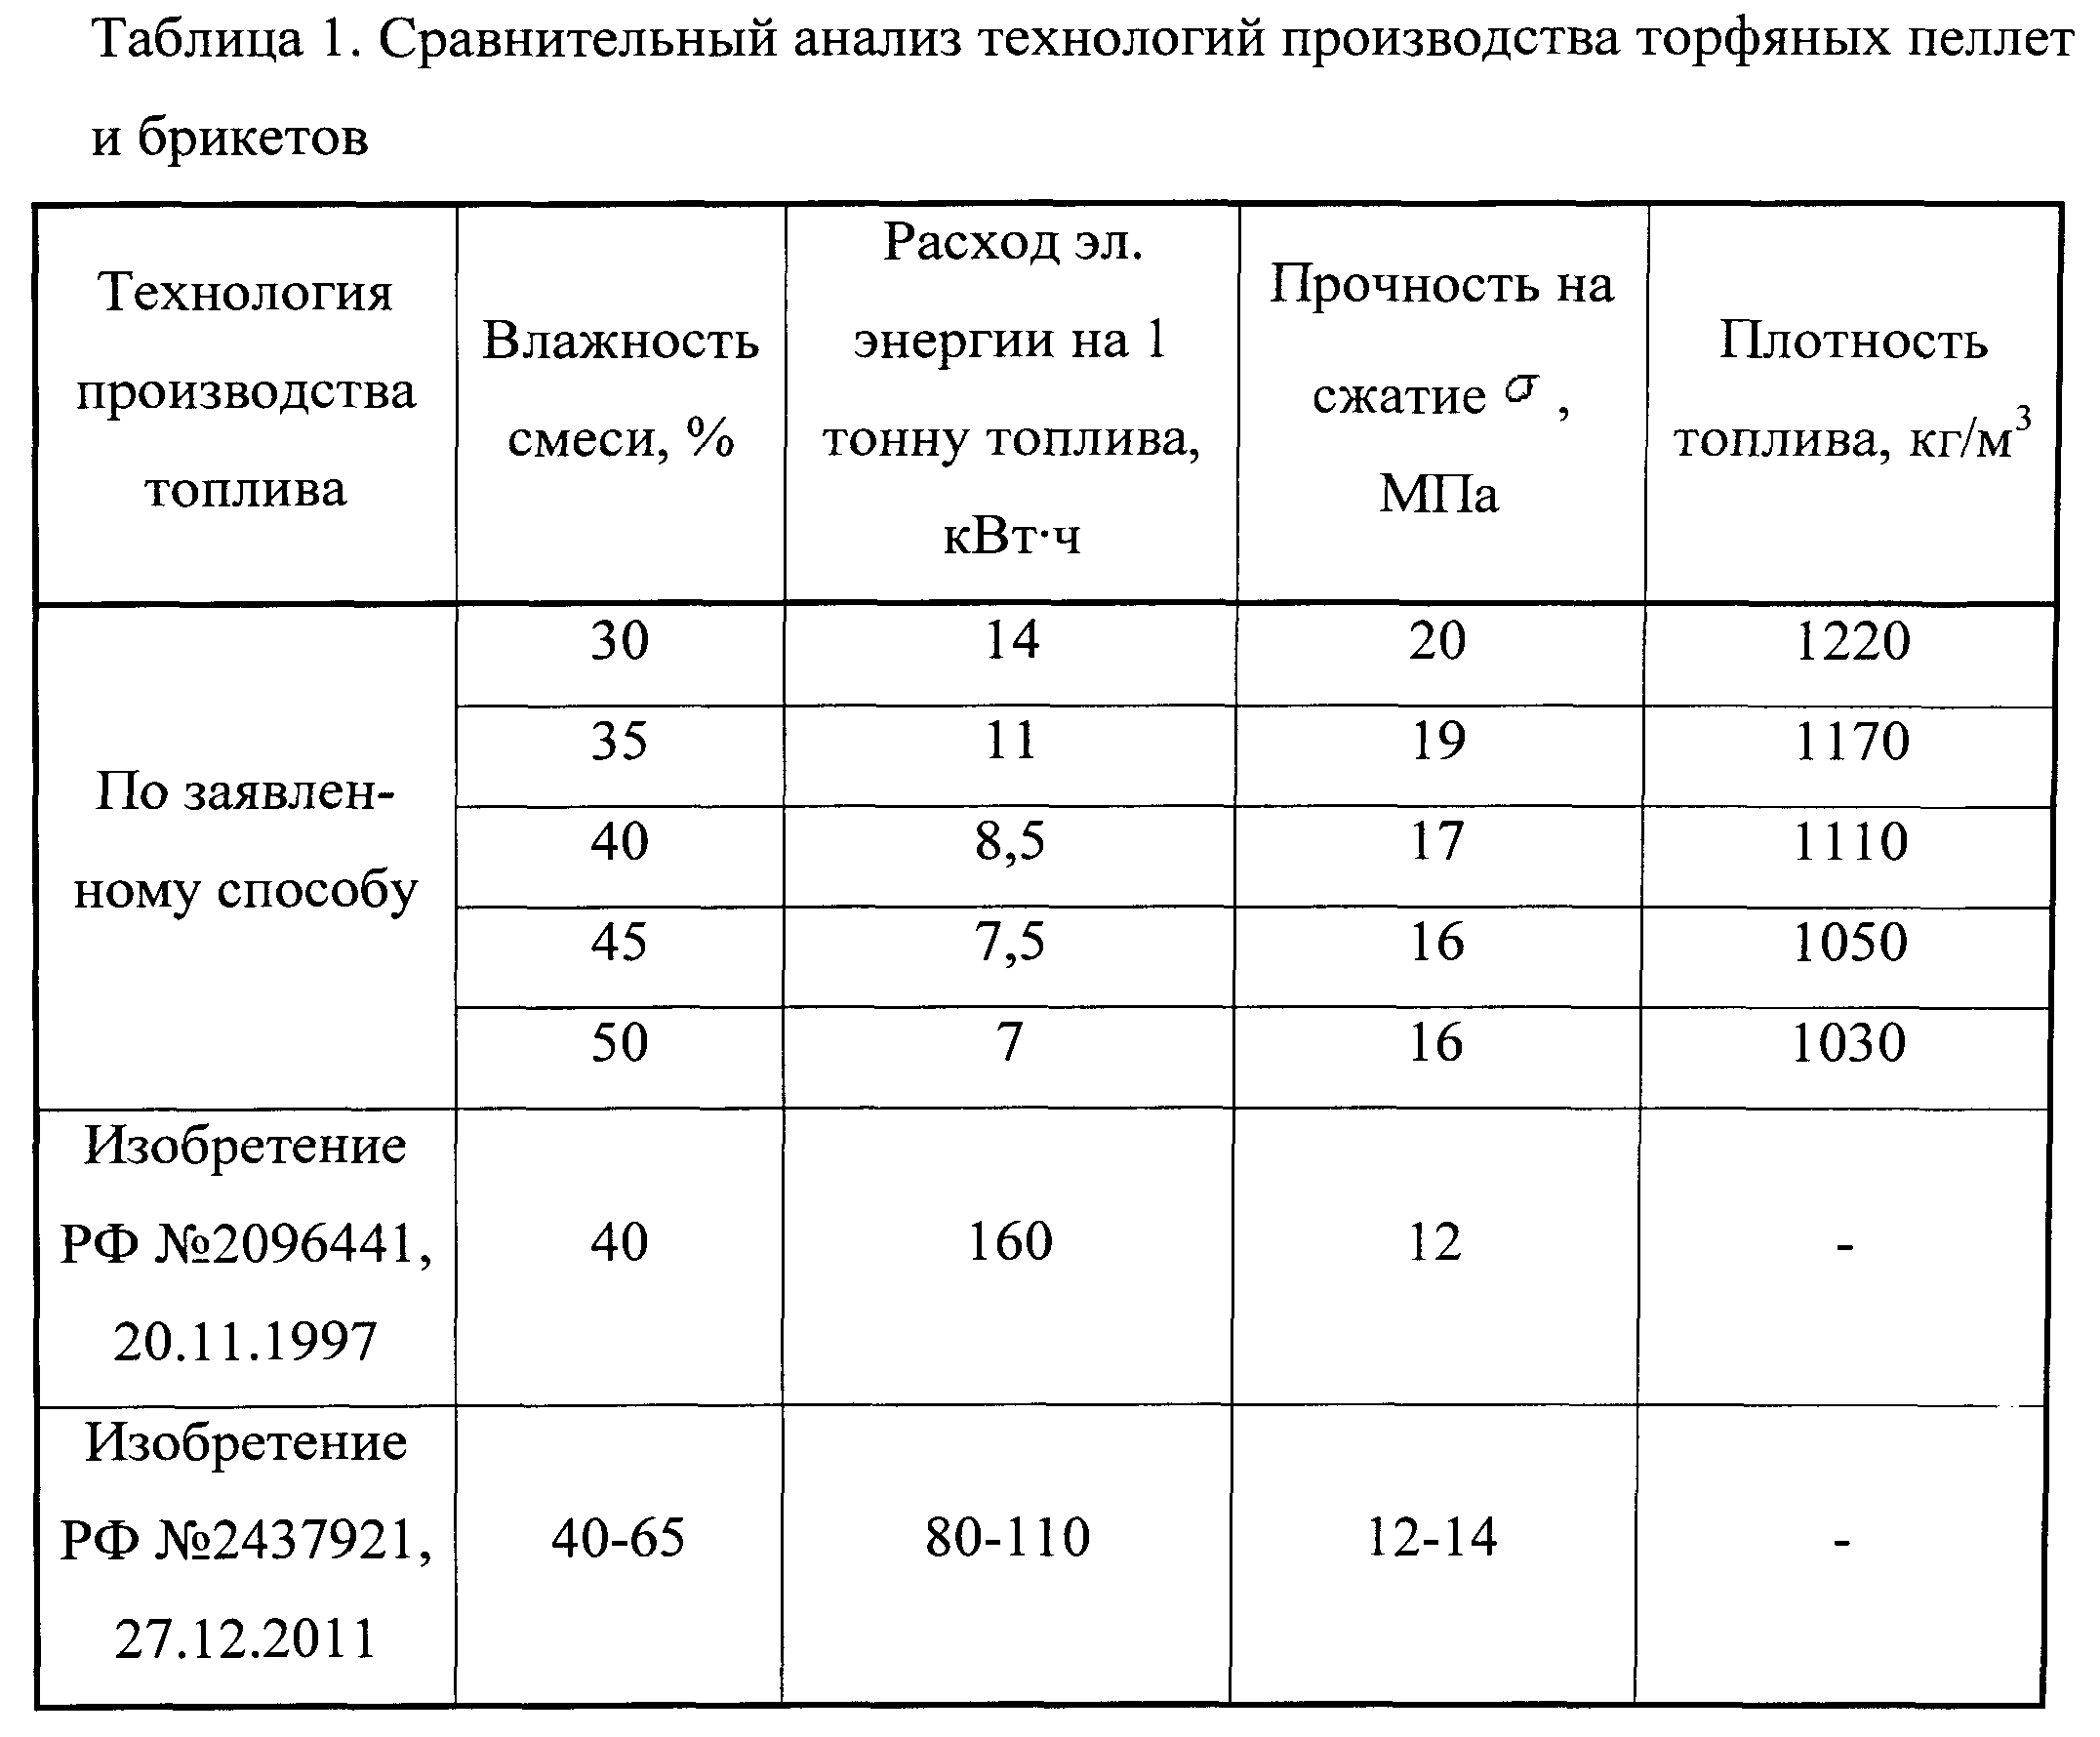 Топливные пеллеты в гранулах - какие бывают и как использовать - uteplenieplus.ru